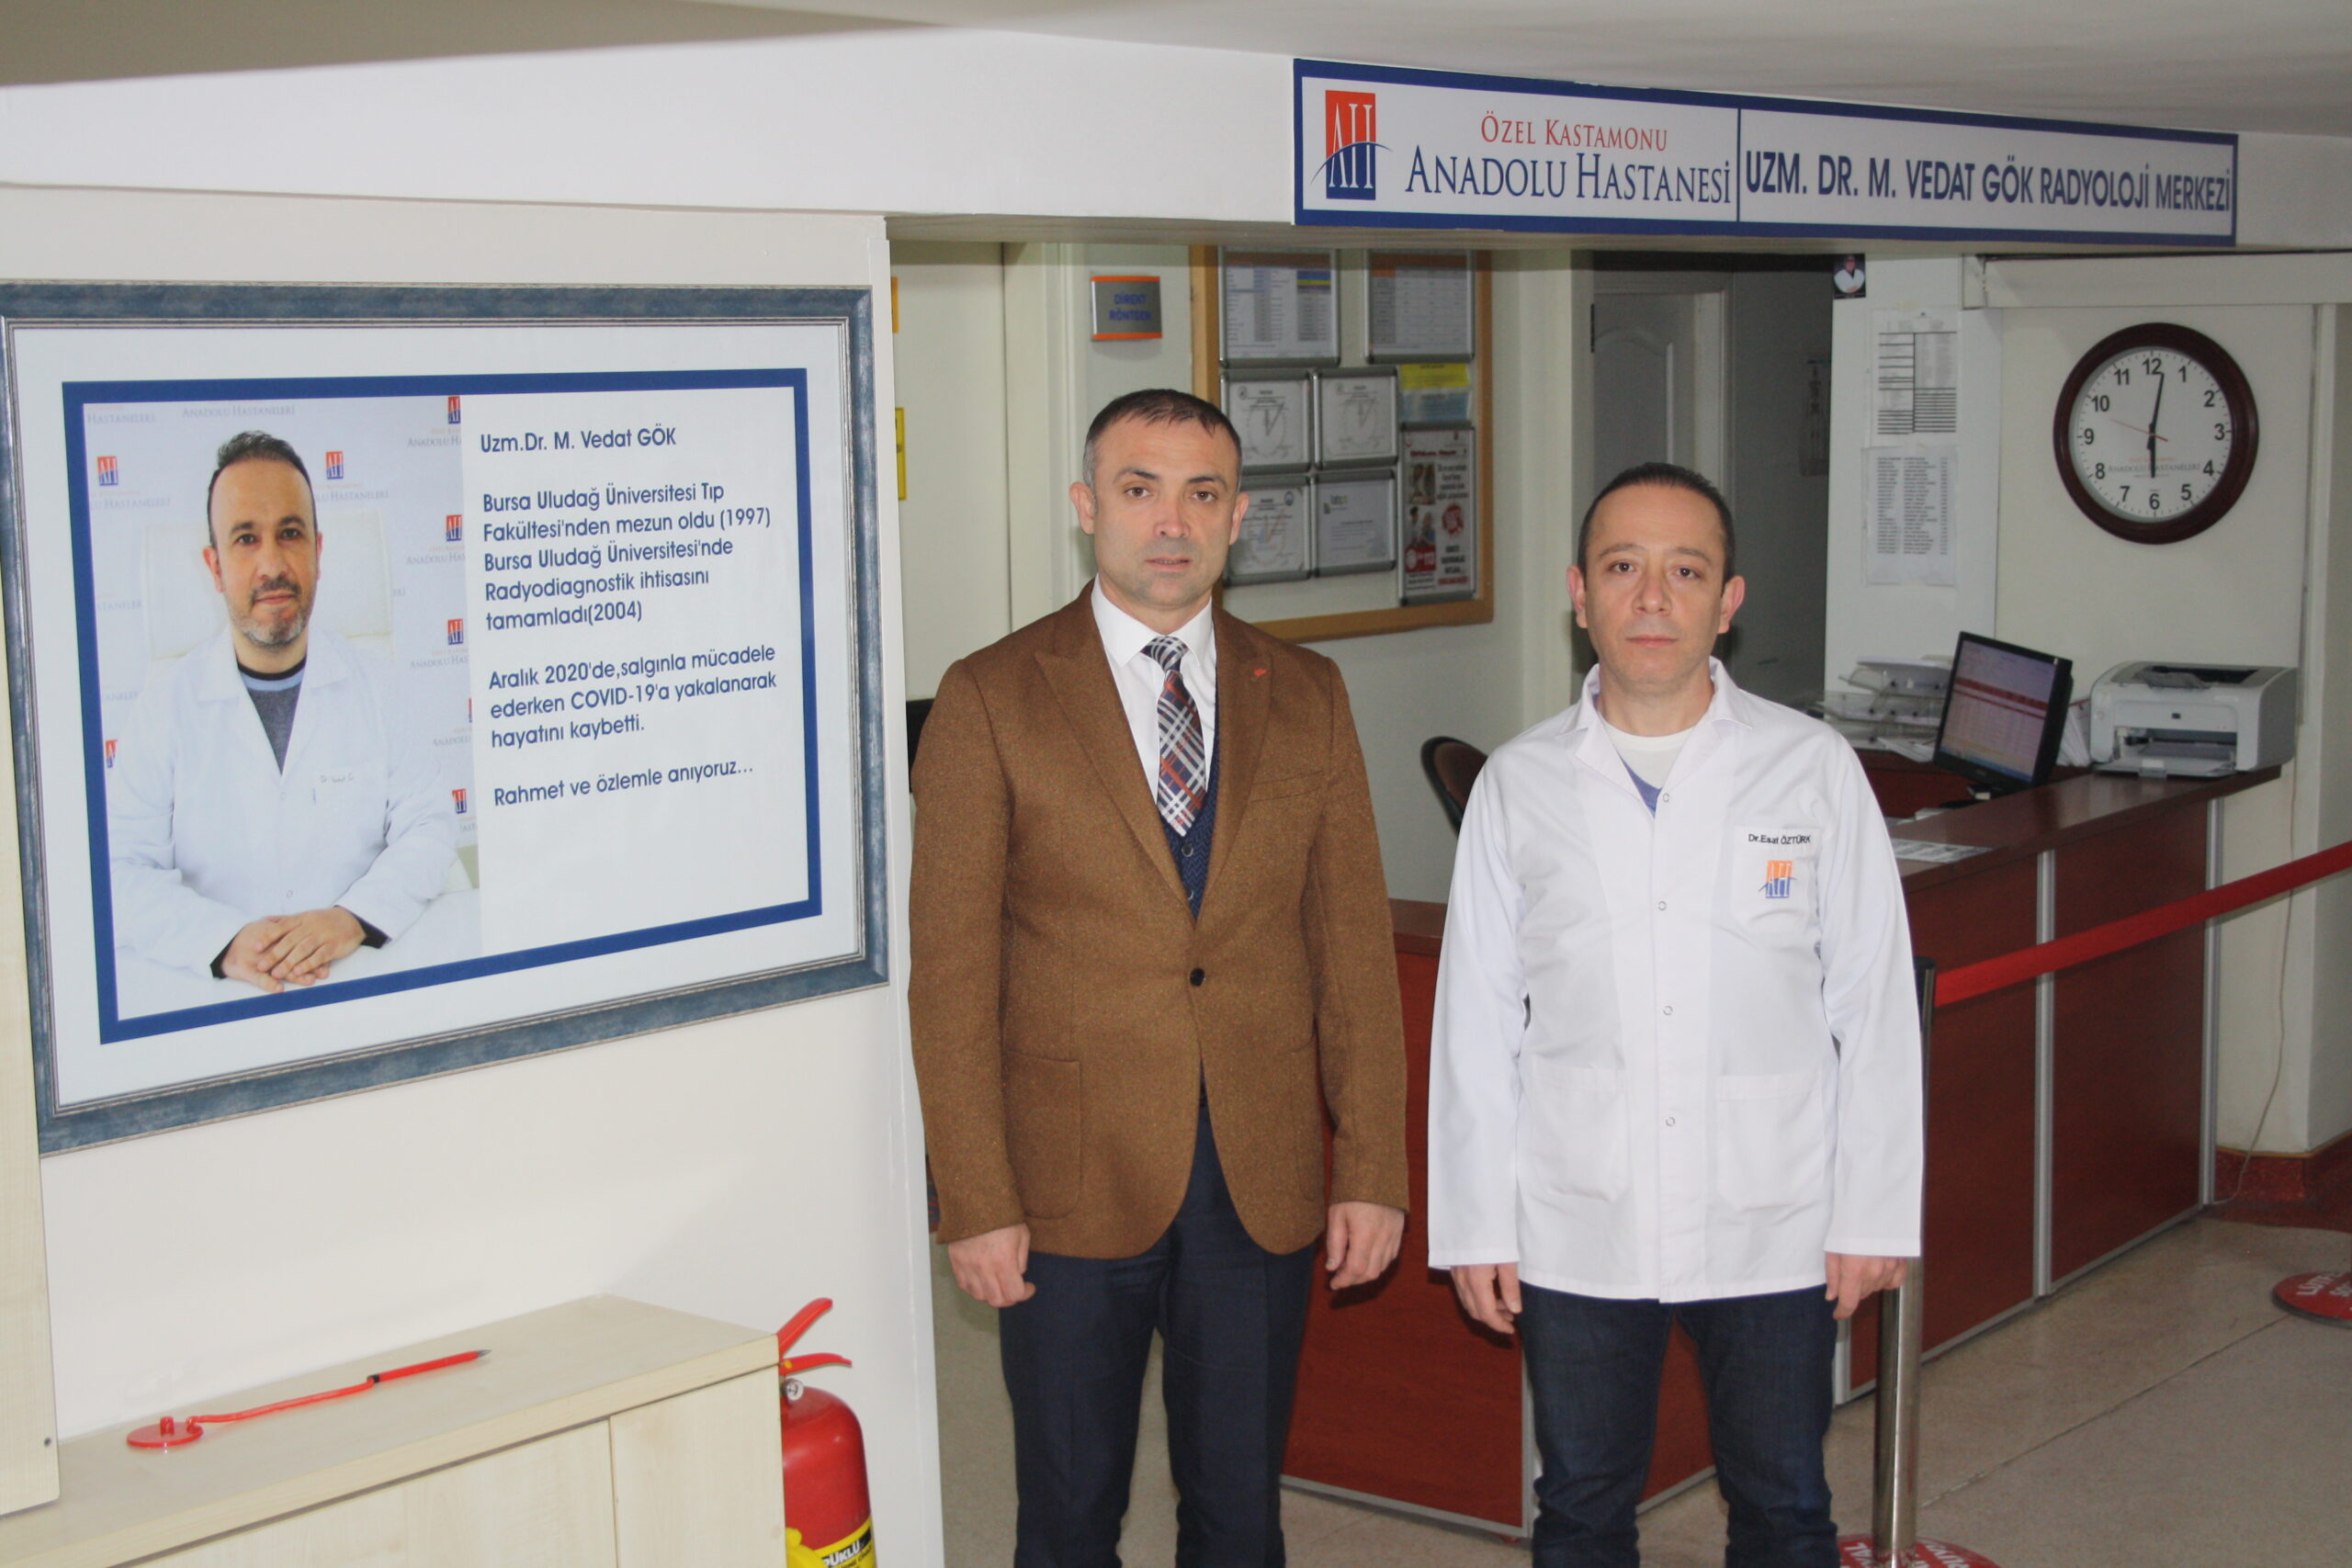 Uzm. Dr. Vedat Gök ve Op. Dr. Metin Baş’ın isimleri Anadolu Hastanesi’nde yaşayacak